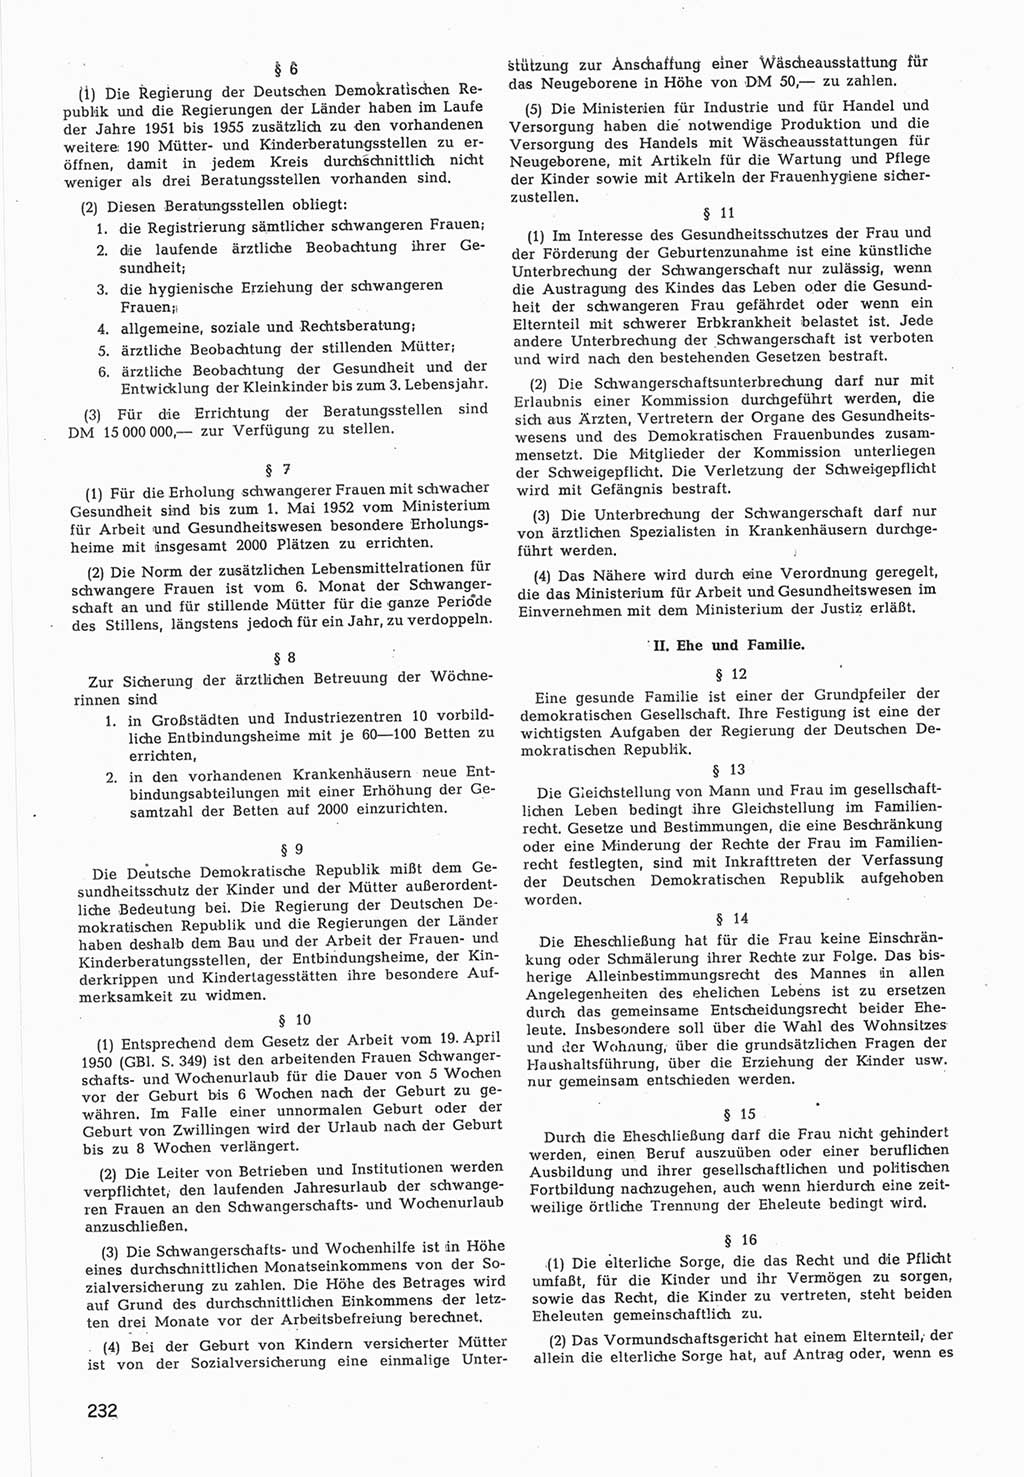 Provisorische Volkskammer (VK) der Deutschen Demokratischen Republik (DDR) 1949-1950, Dokument 834 (Prov. VK DDR 1949-1950, Dok. 834)